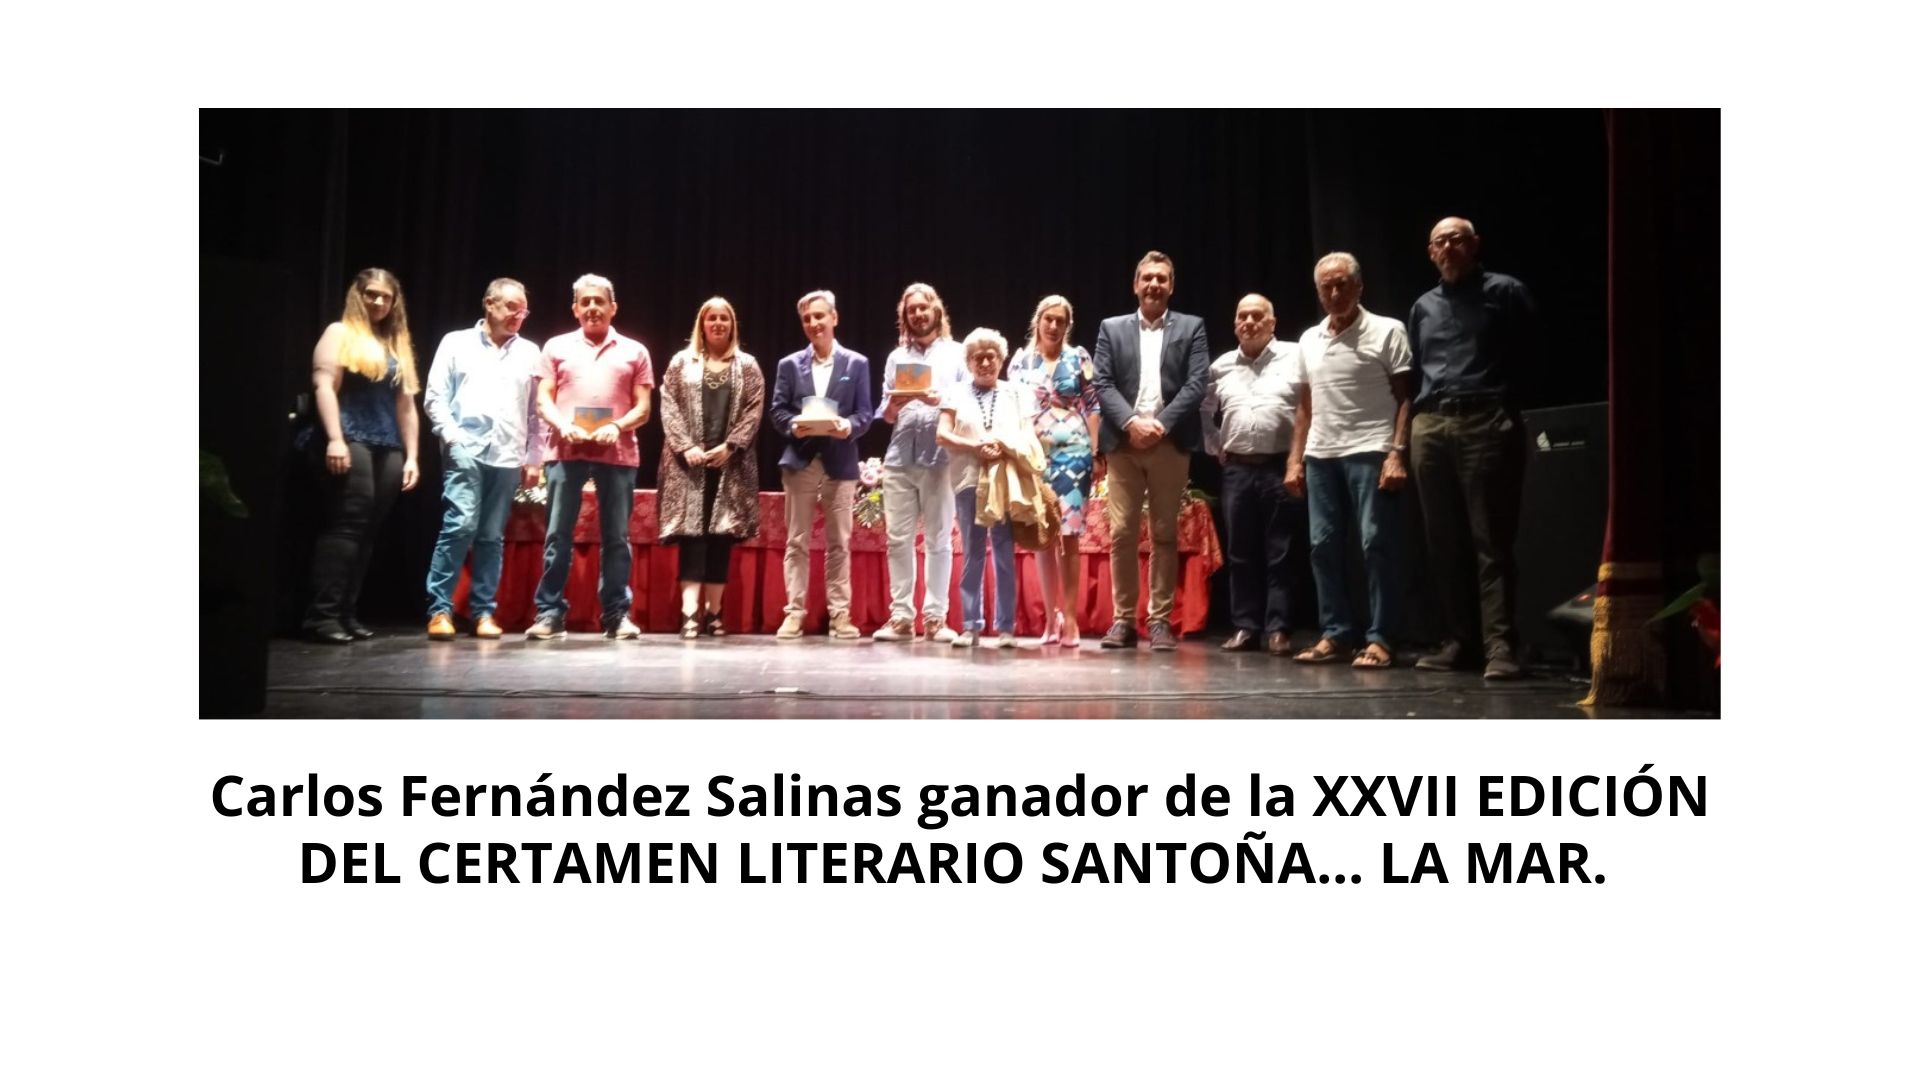 Salinas ganador XXVII edición del certamen literario Santoña... la mar